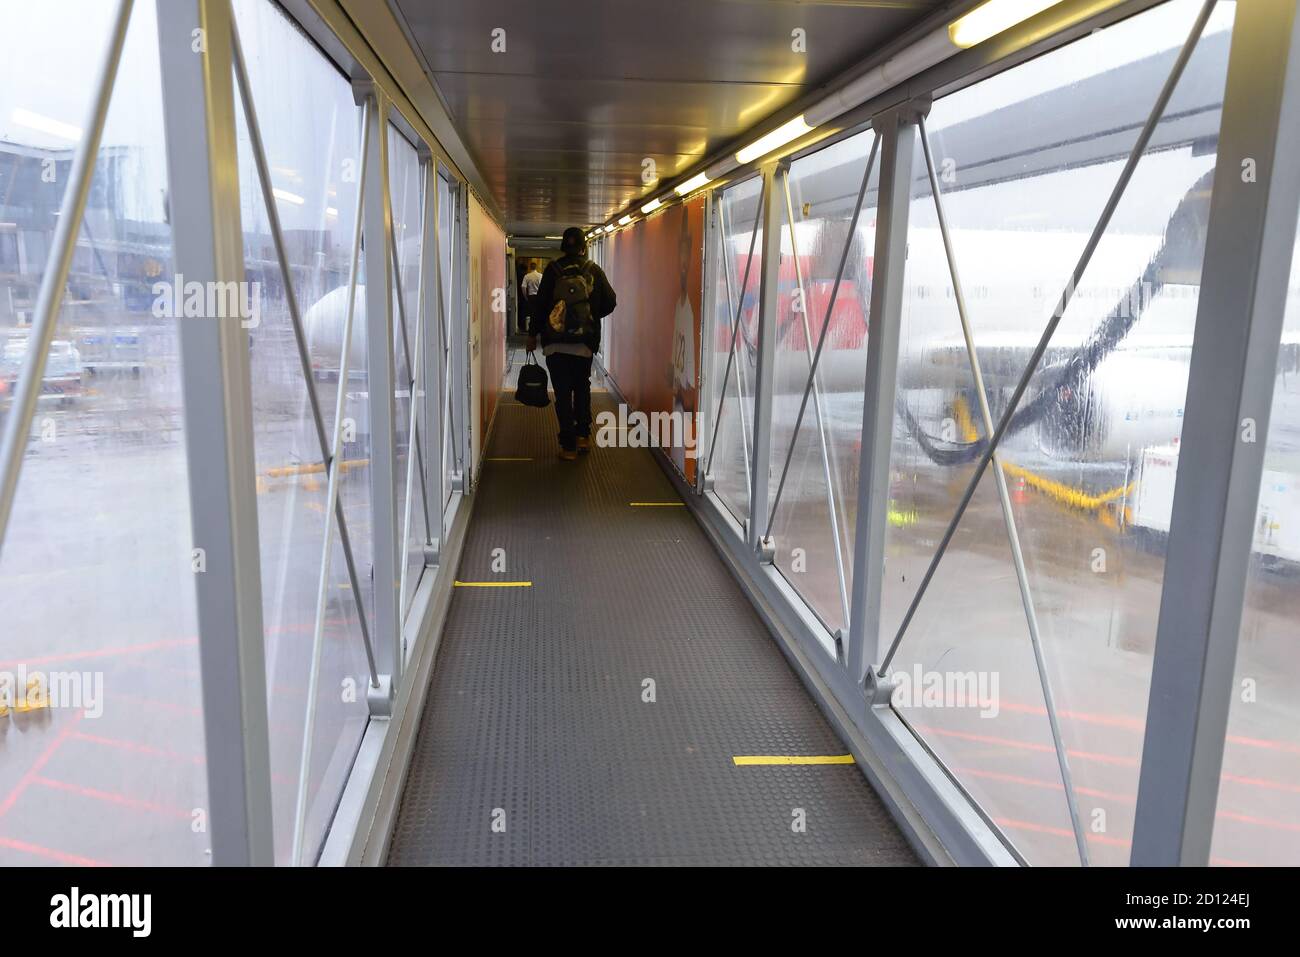 Passagiere an Bord der Brücke (Jet-Brücke) mit Bodenmarkierungen für soziale Distanzierung aufgrund von Coronavirus / Covid 19 Pandemie. Jetway mit Bodenmarkierungen. Stockfoto